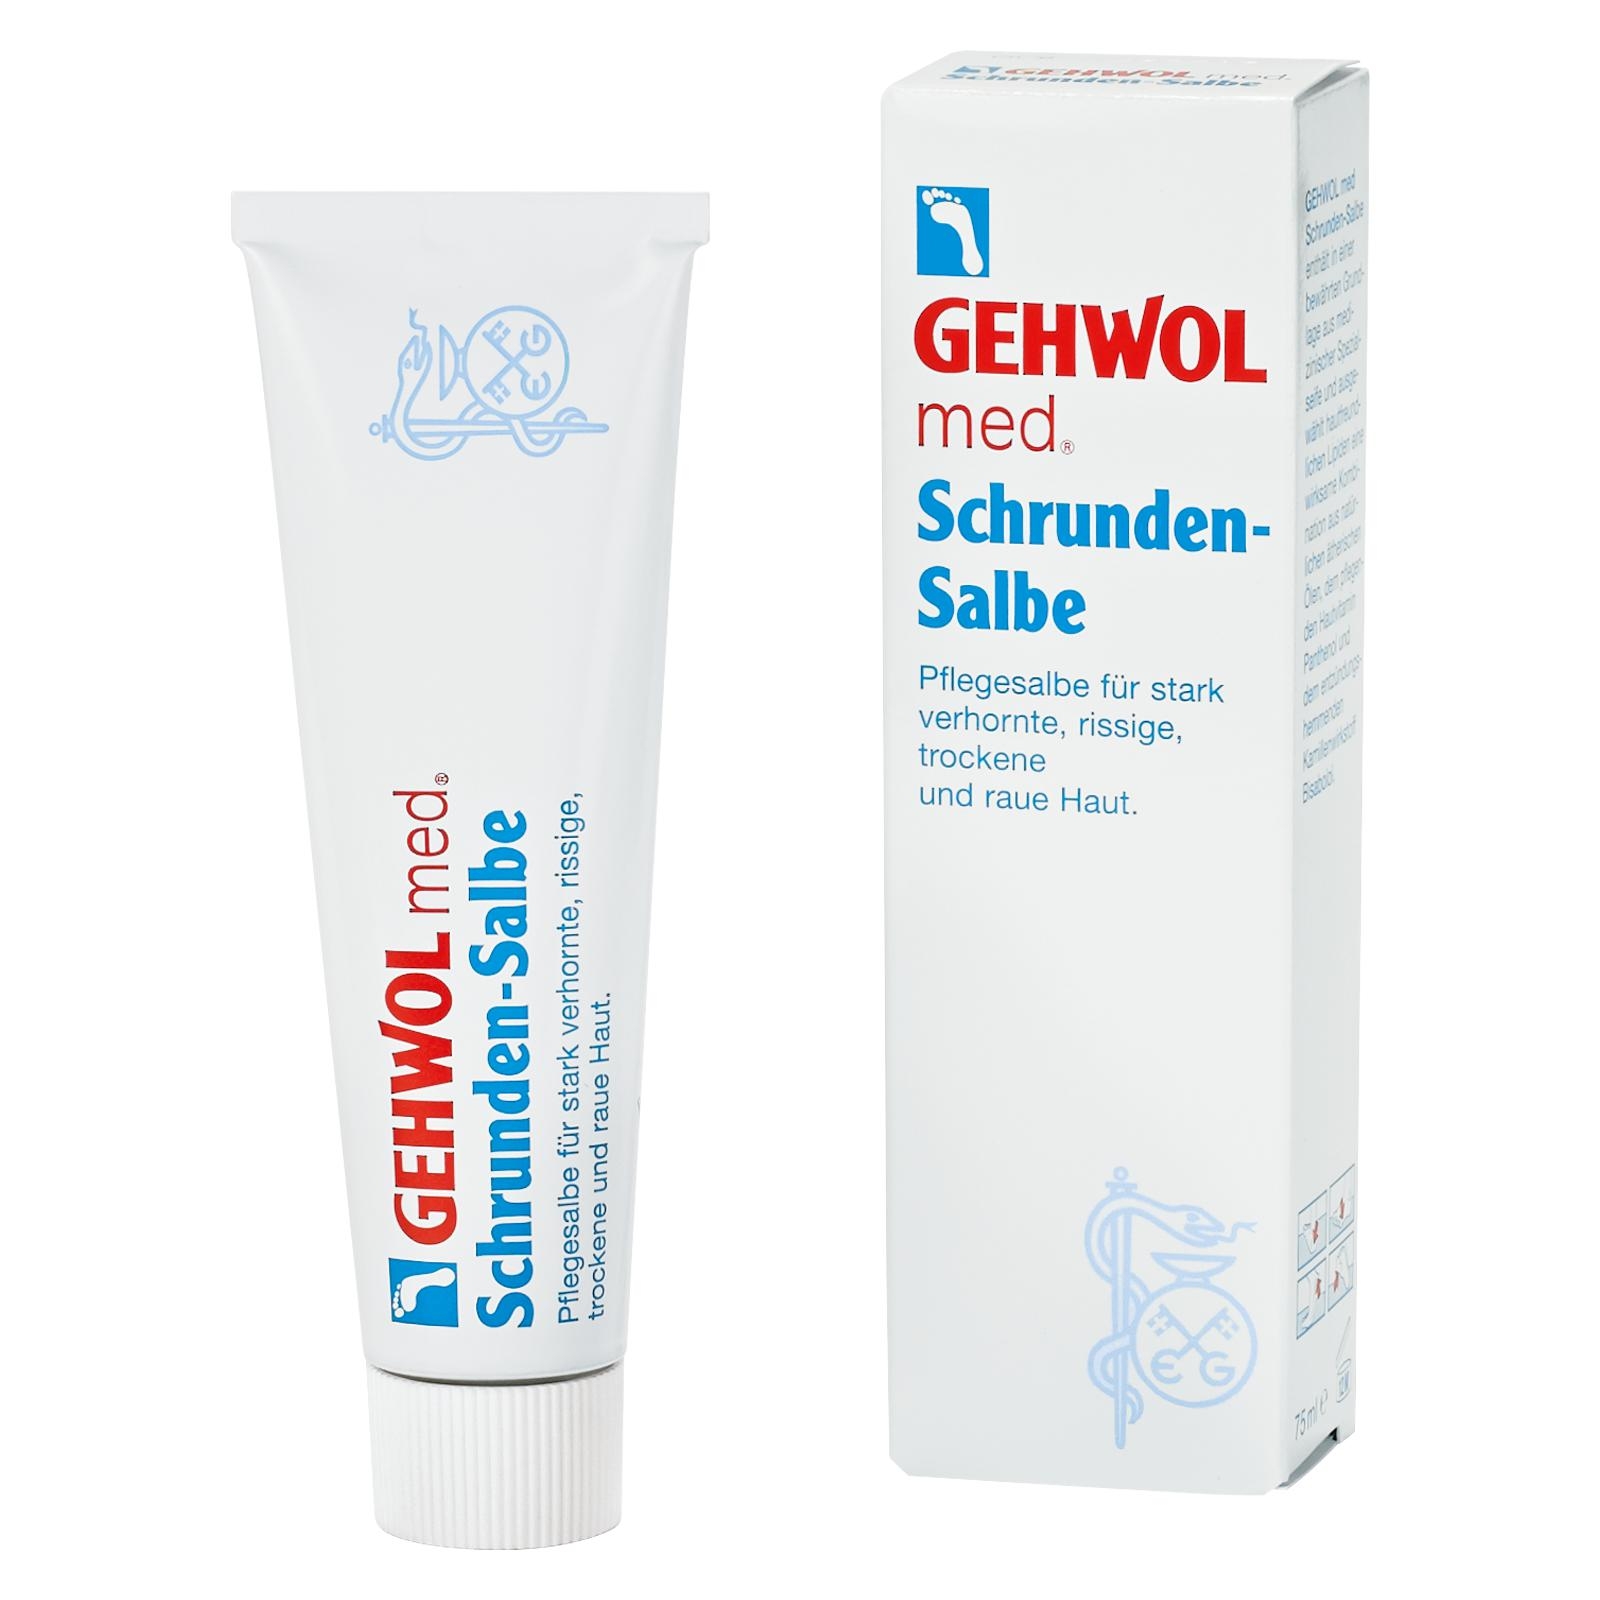 GEHWOL med Schrunden-Salbe | 6x 75 ml (450 ml)